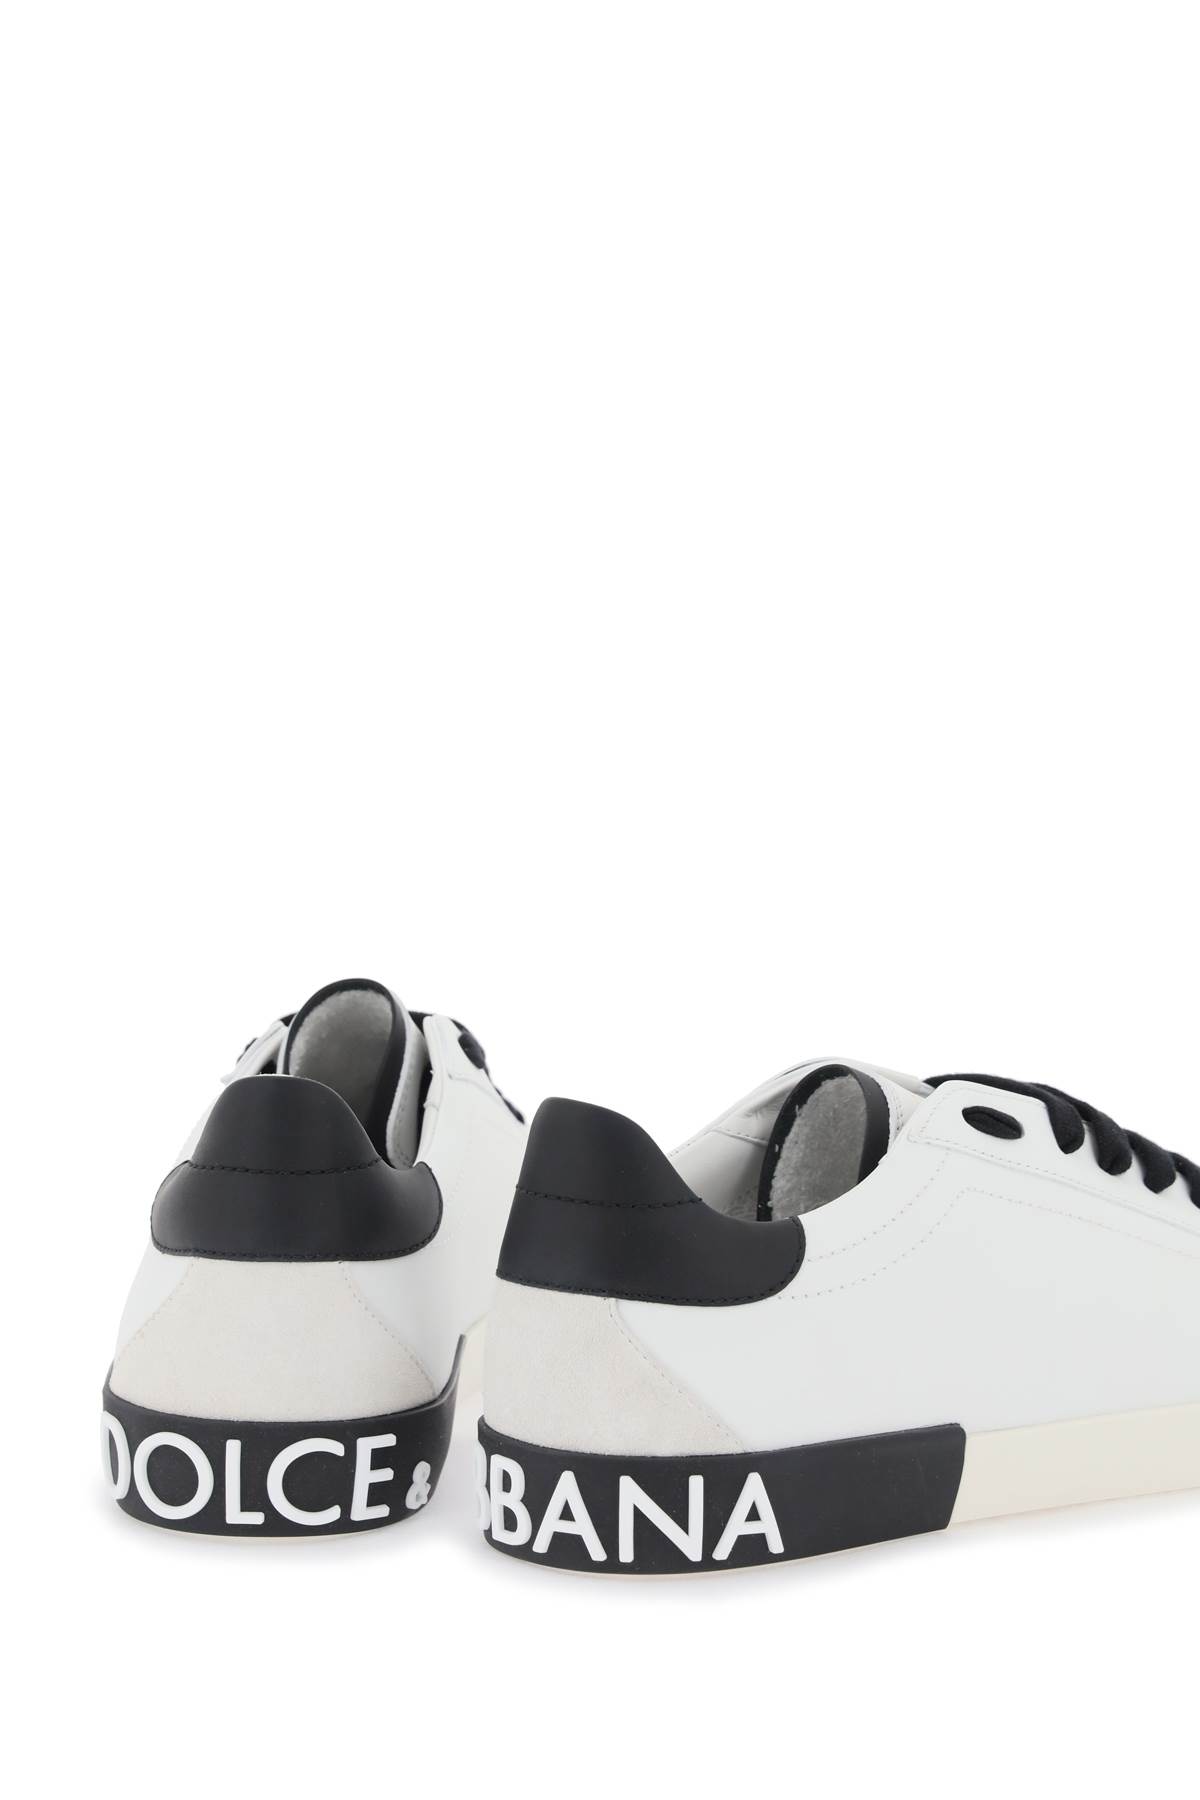 Shop Dolce & Gabbana Portofino Nappa Leather Sneakers In Bianco/nero